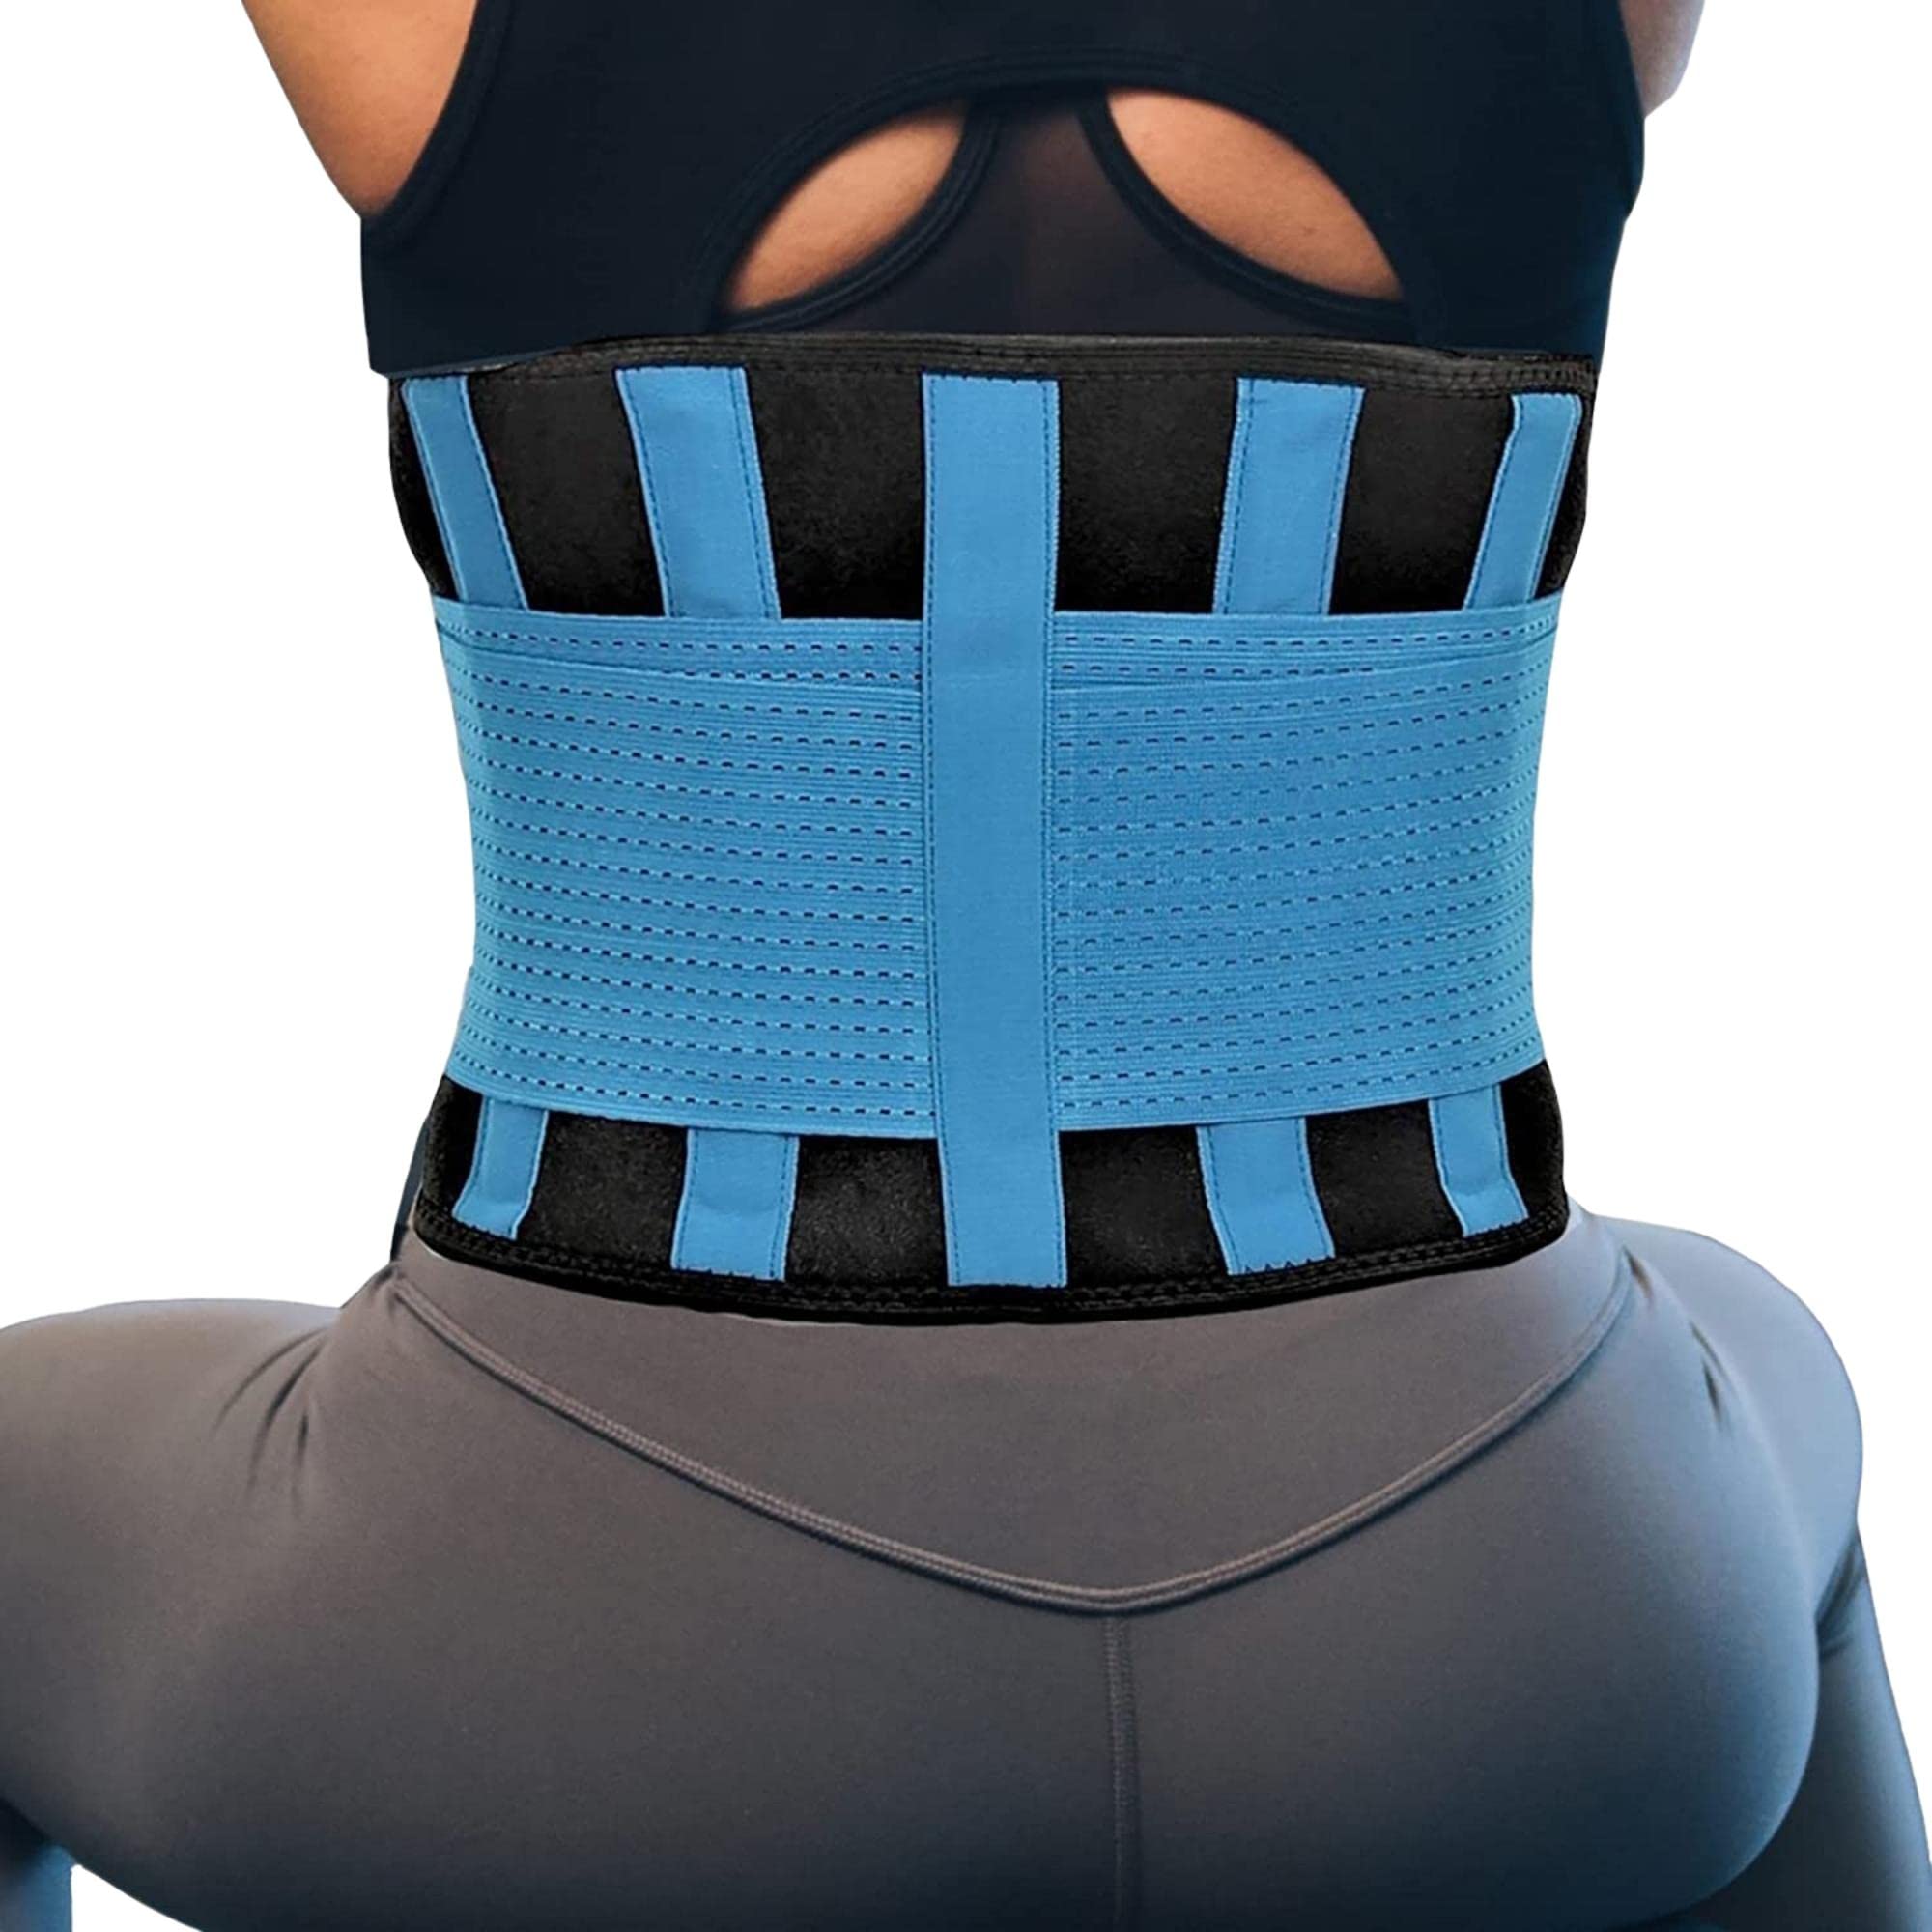 Corset For Posture Correction Belly Back Support Belt Brace Men Corrector  Unisex